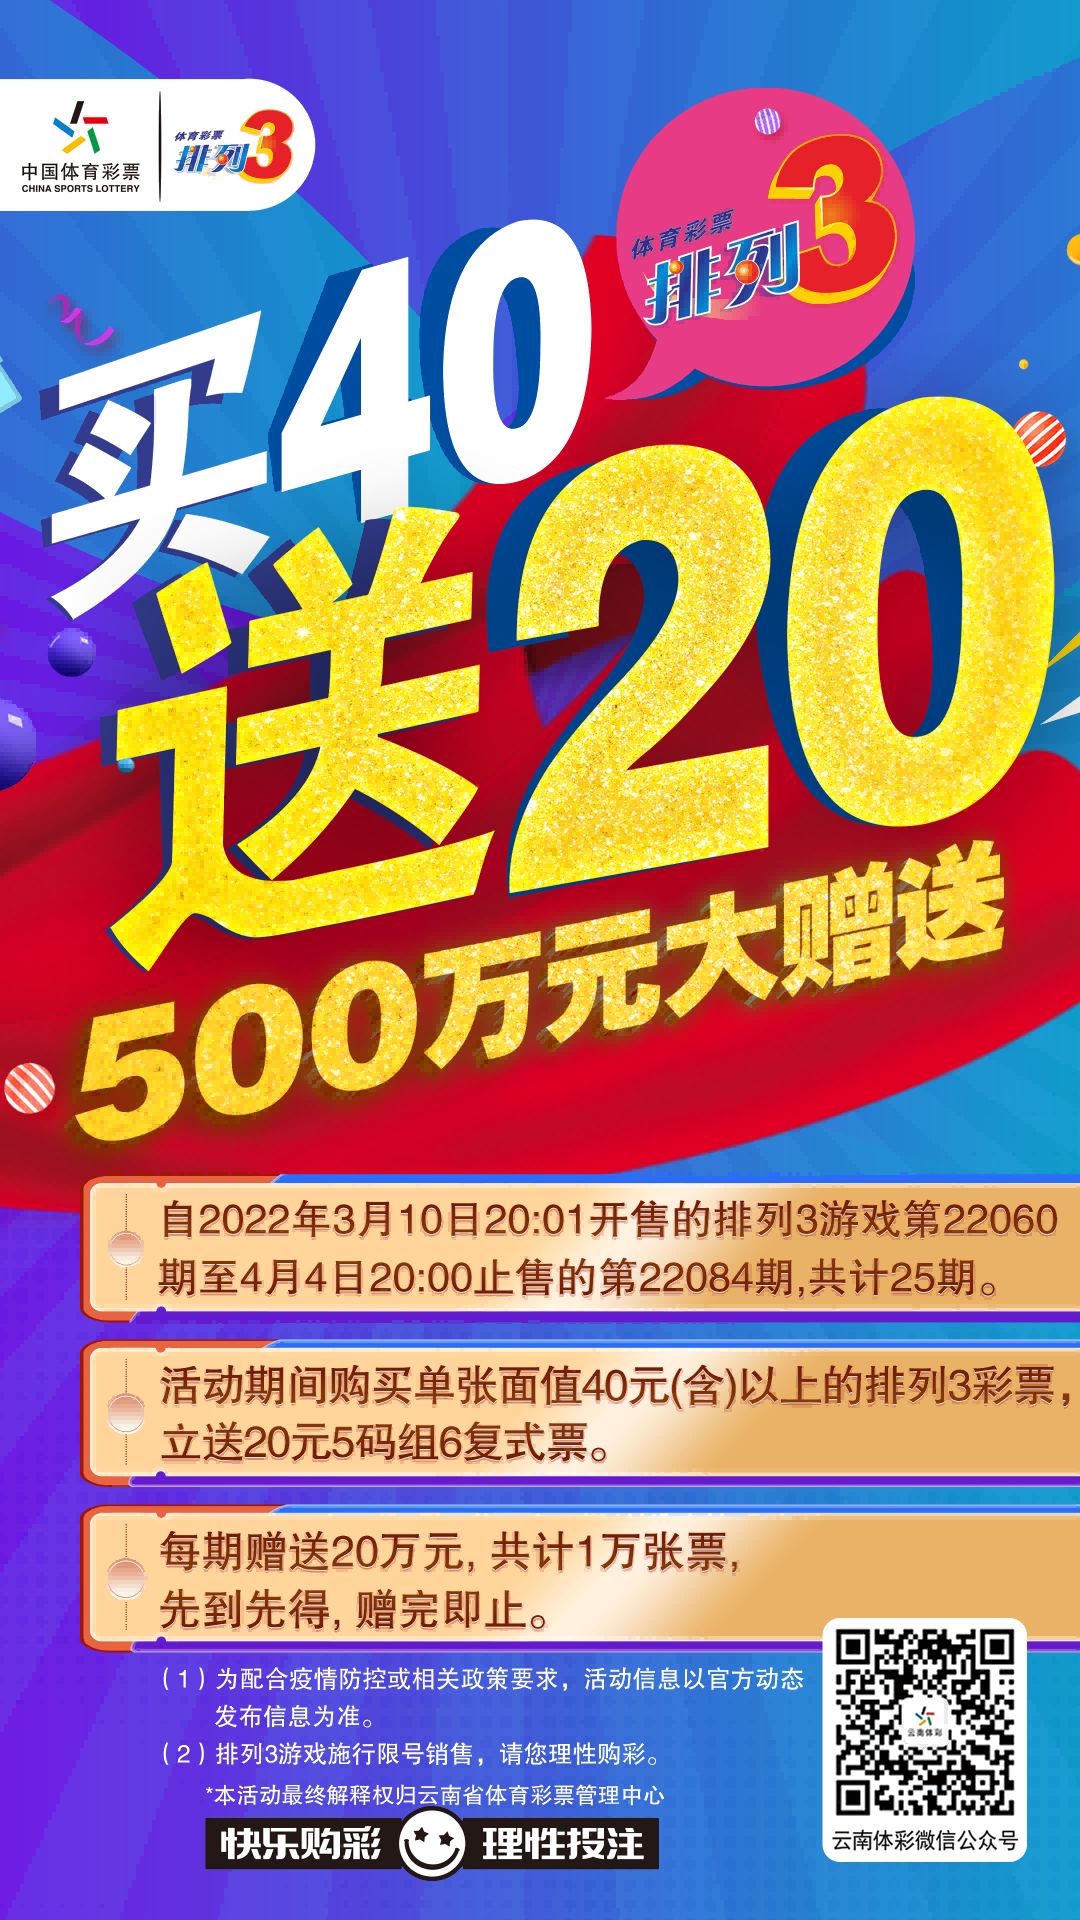 云南体彩排列3游戏500万元大赠送活动来了!